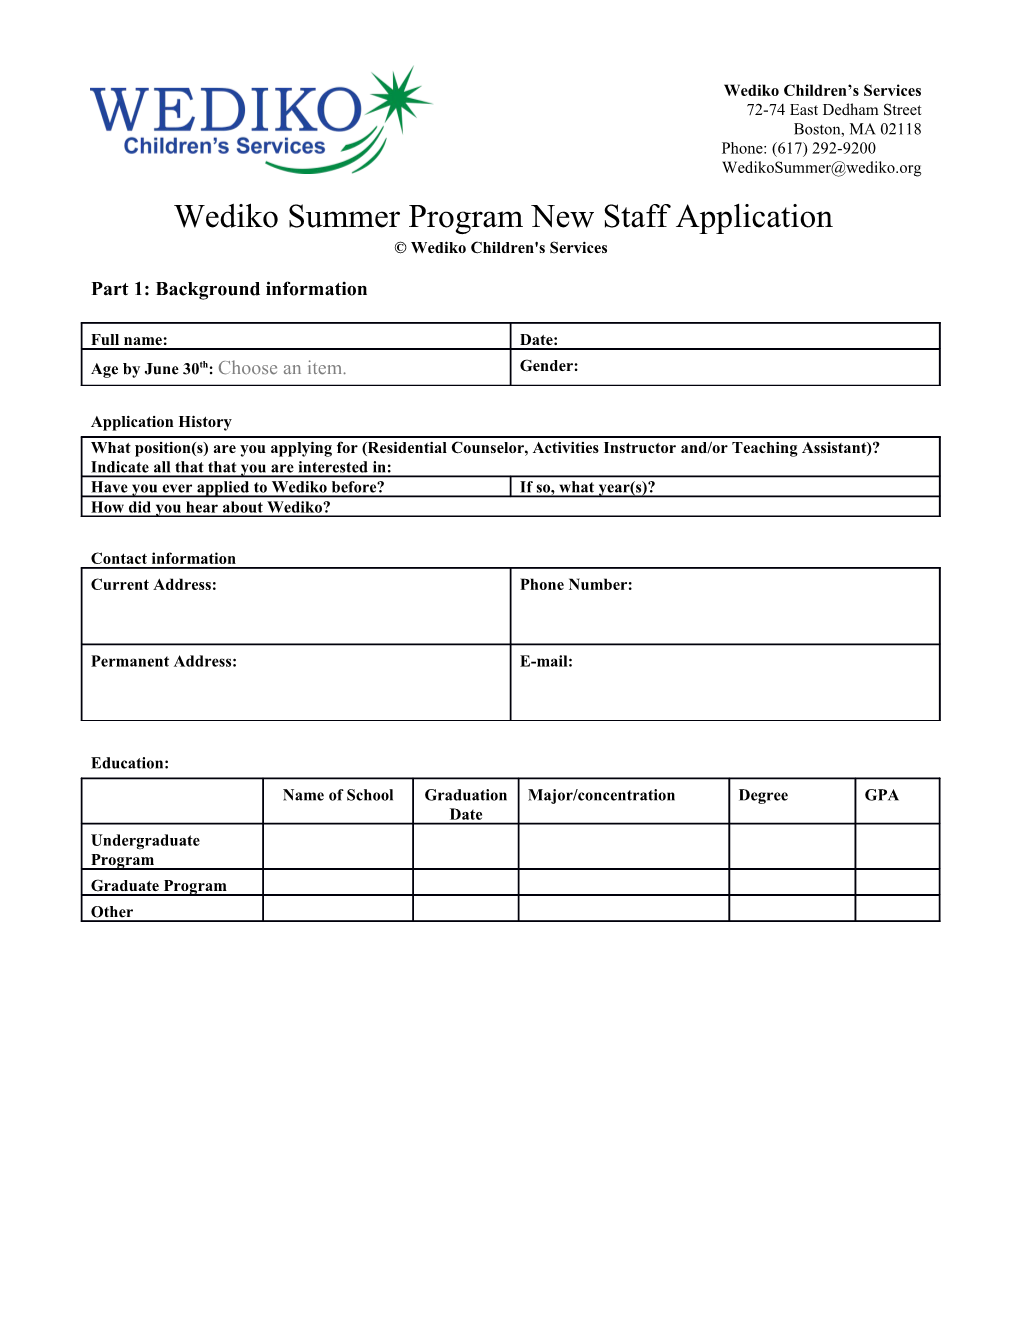 Wediko Children S Services Staff Application Summer Program